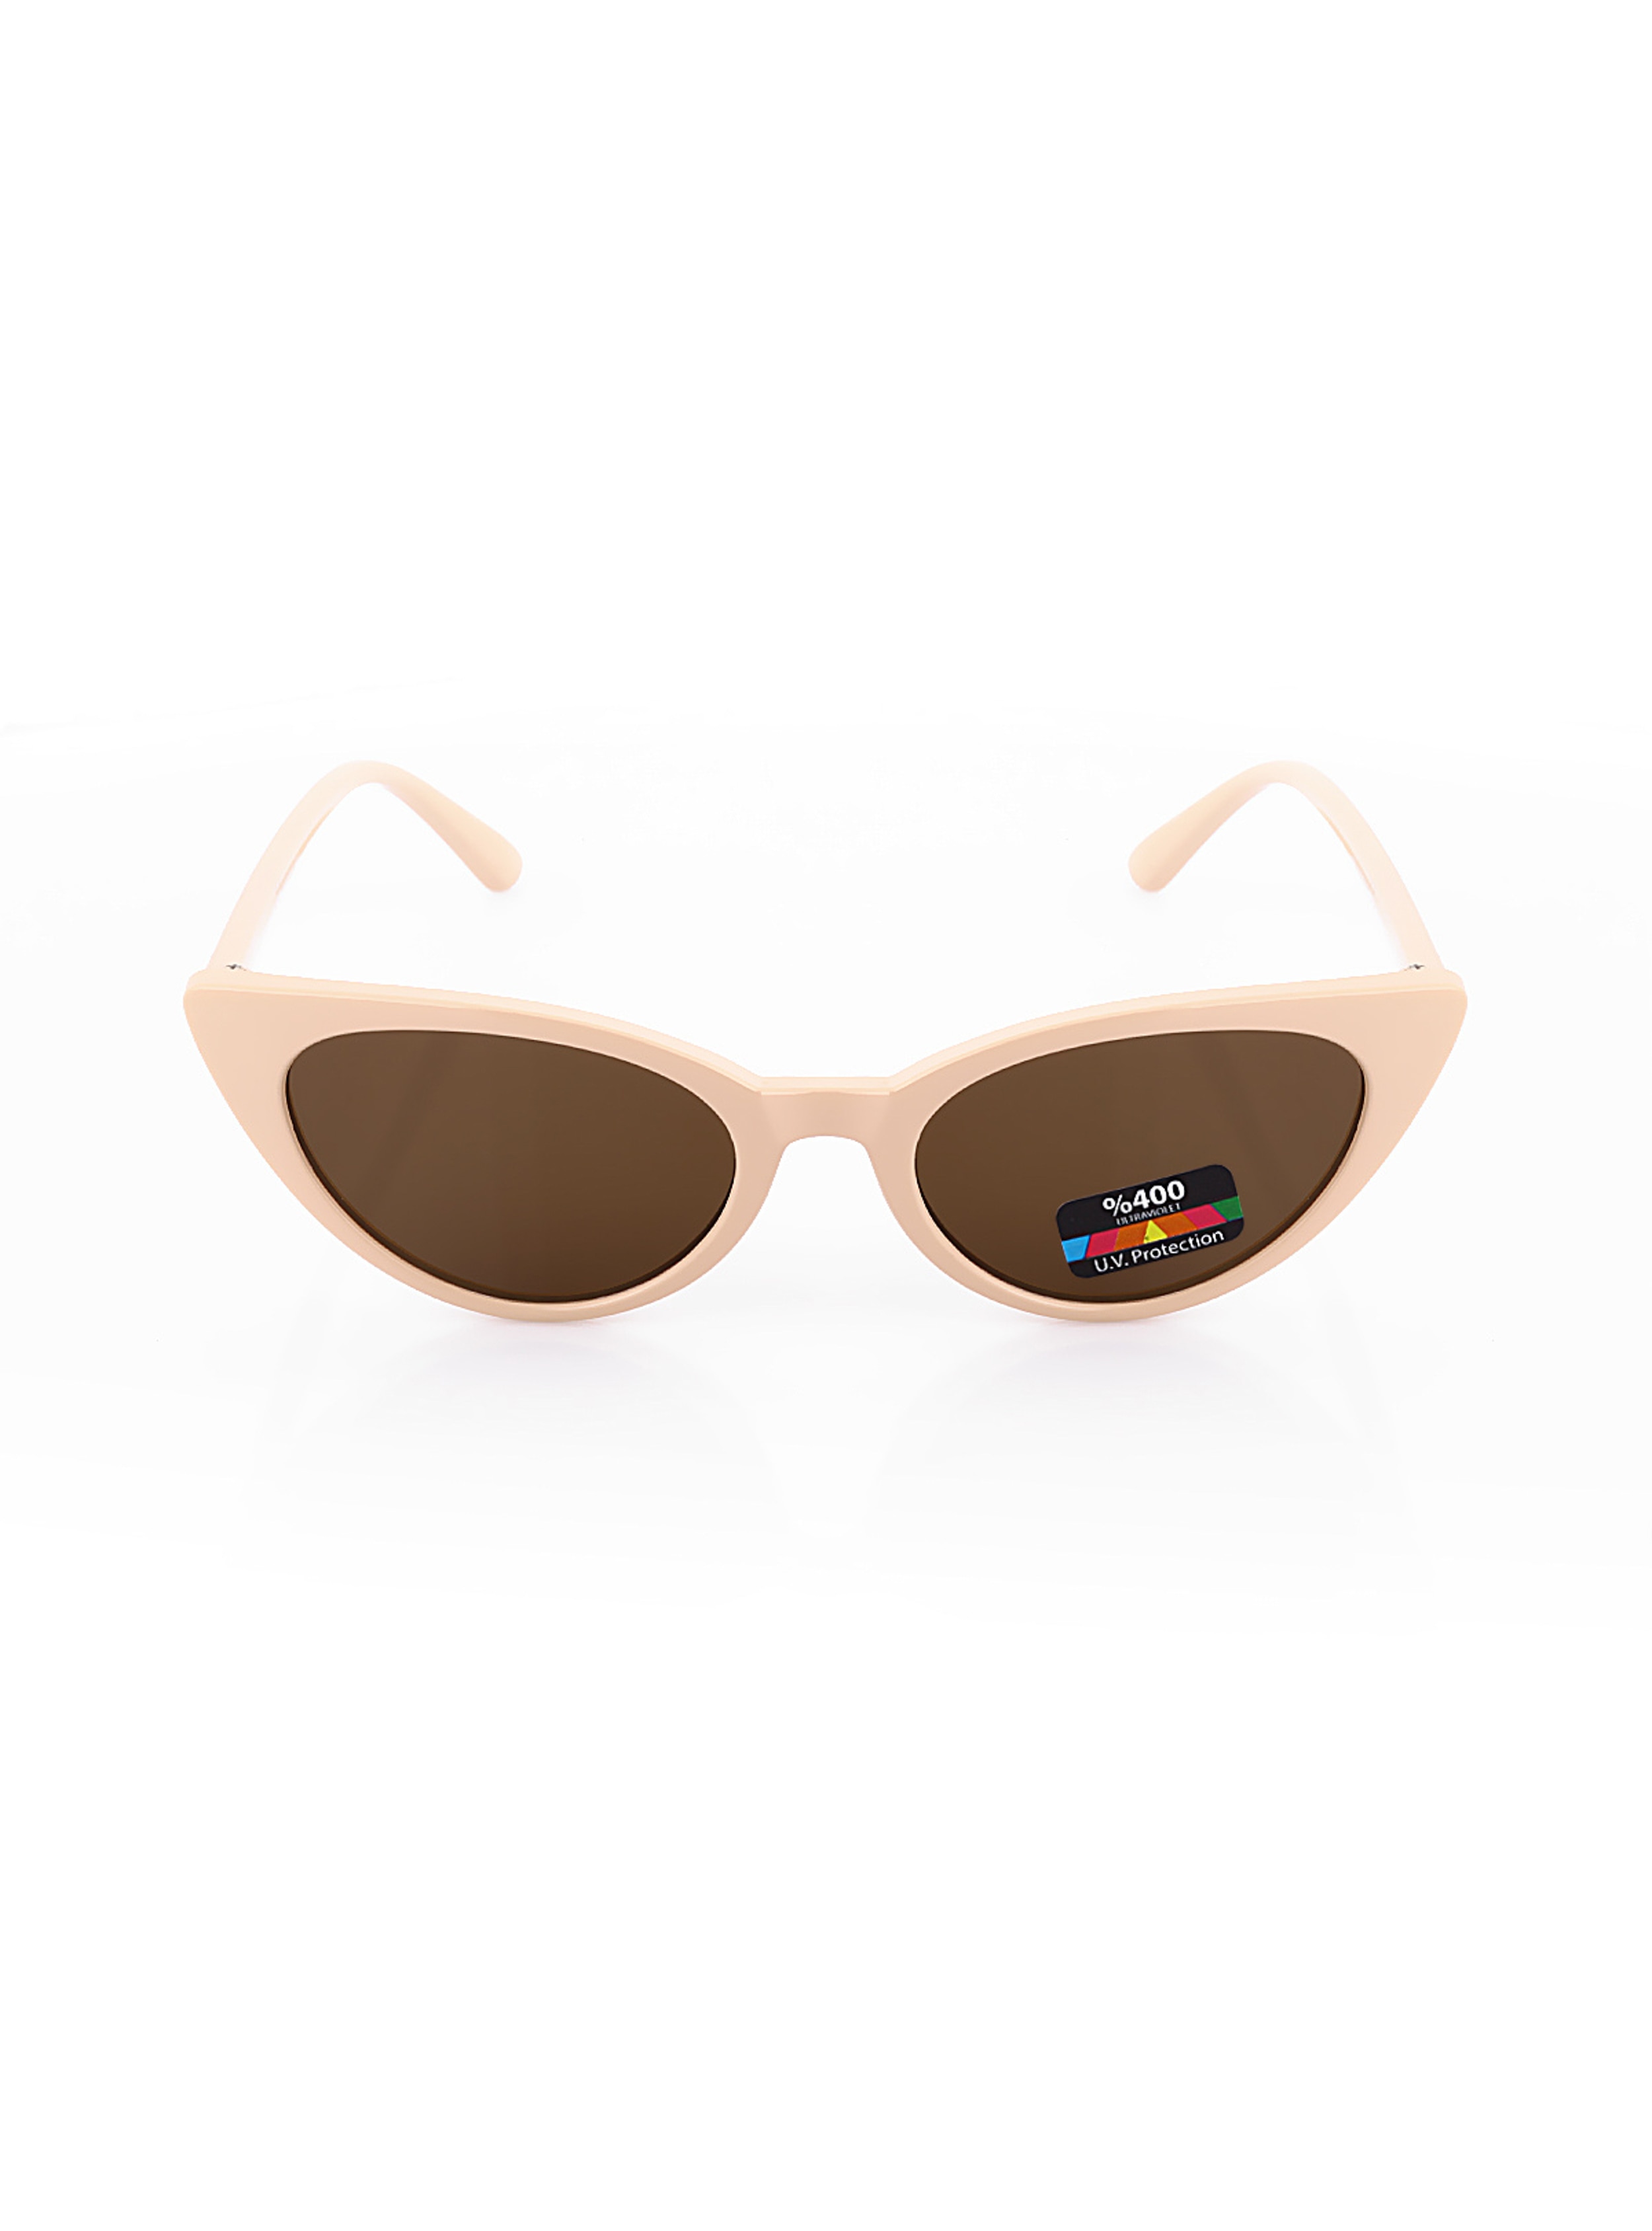 Cream - Sunglasses